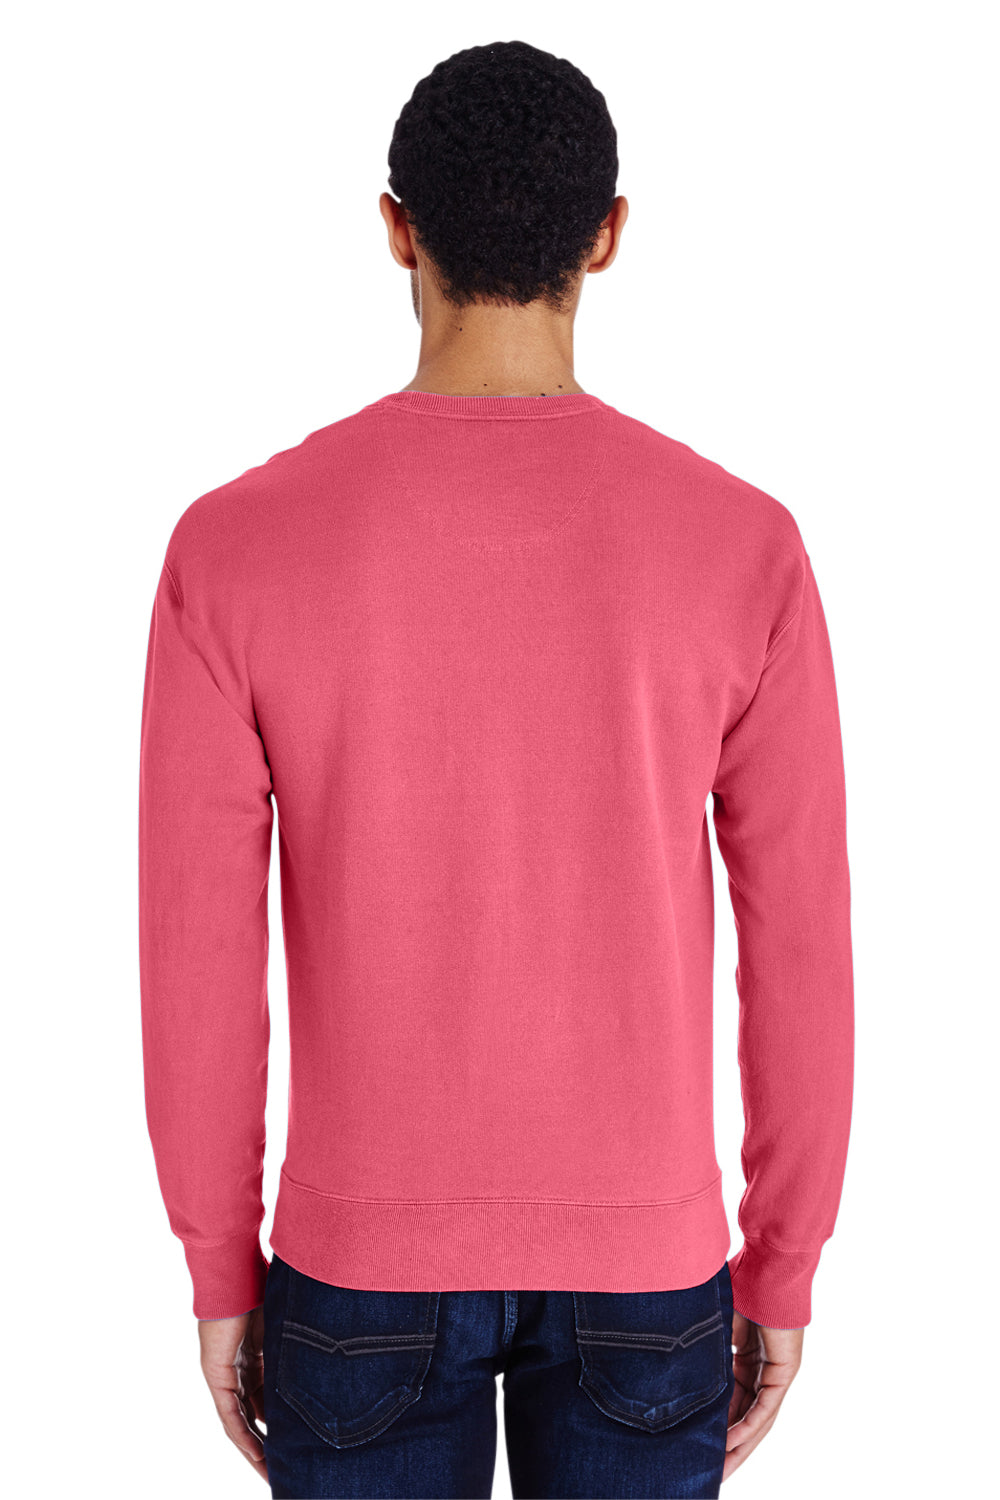 ComfortWash By Hanes GDH400 Mens Crewneck Sweatshirt Crimson Red Back